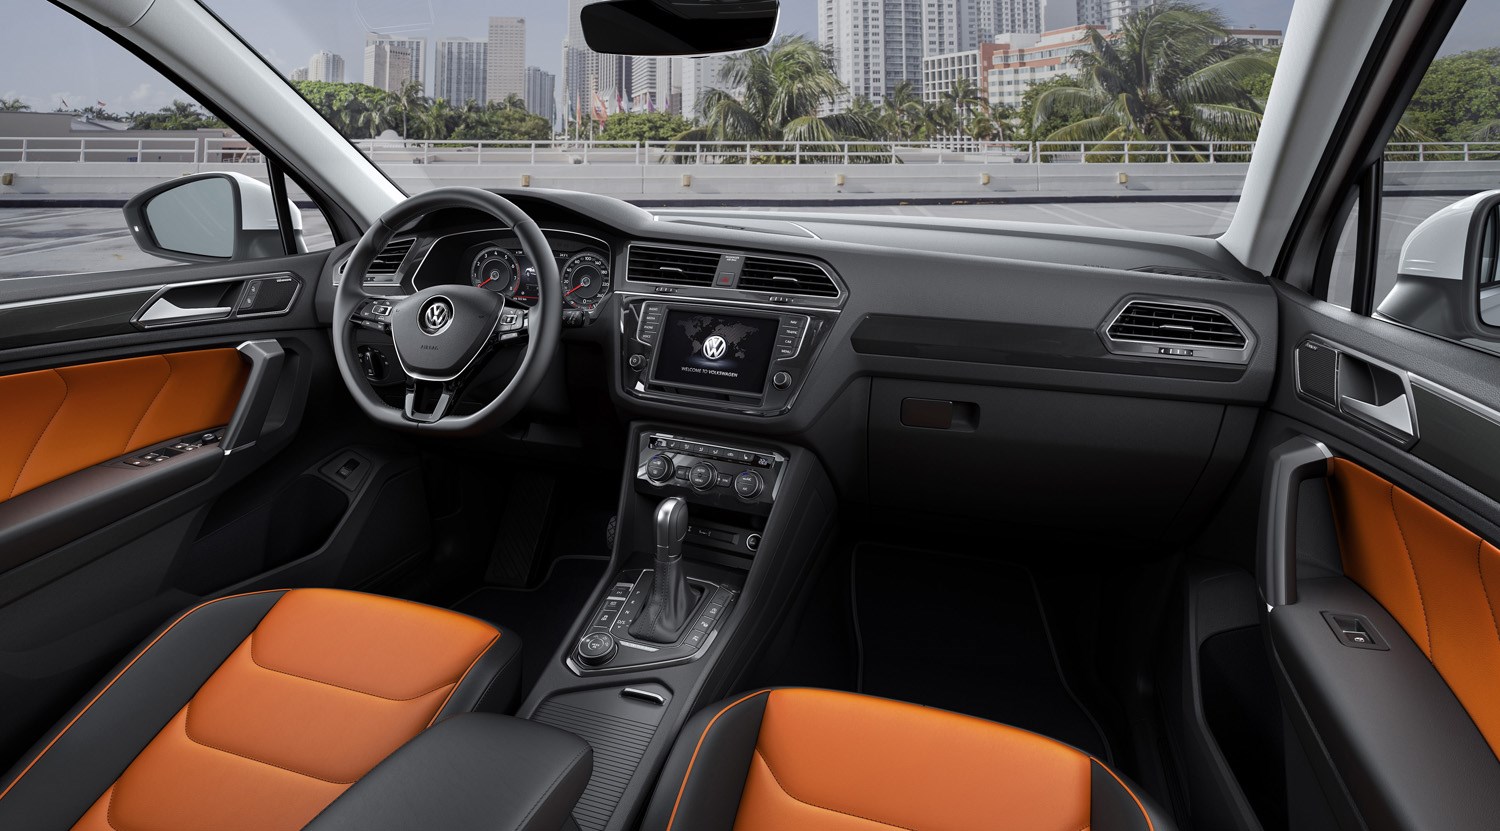 Volkswagen Tiguan Review 2020 Parkers